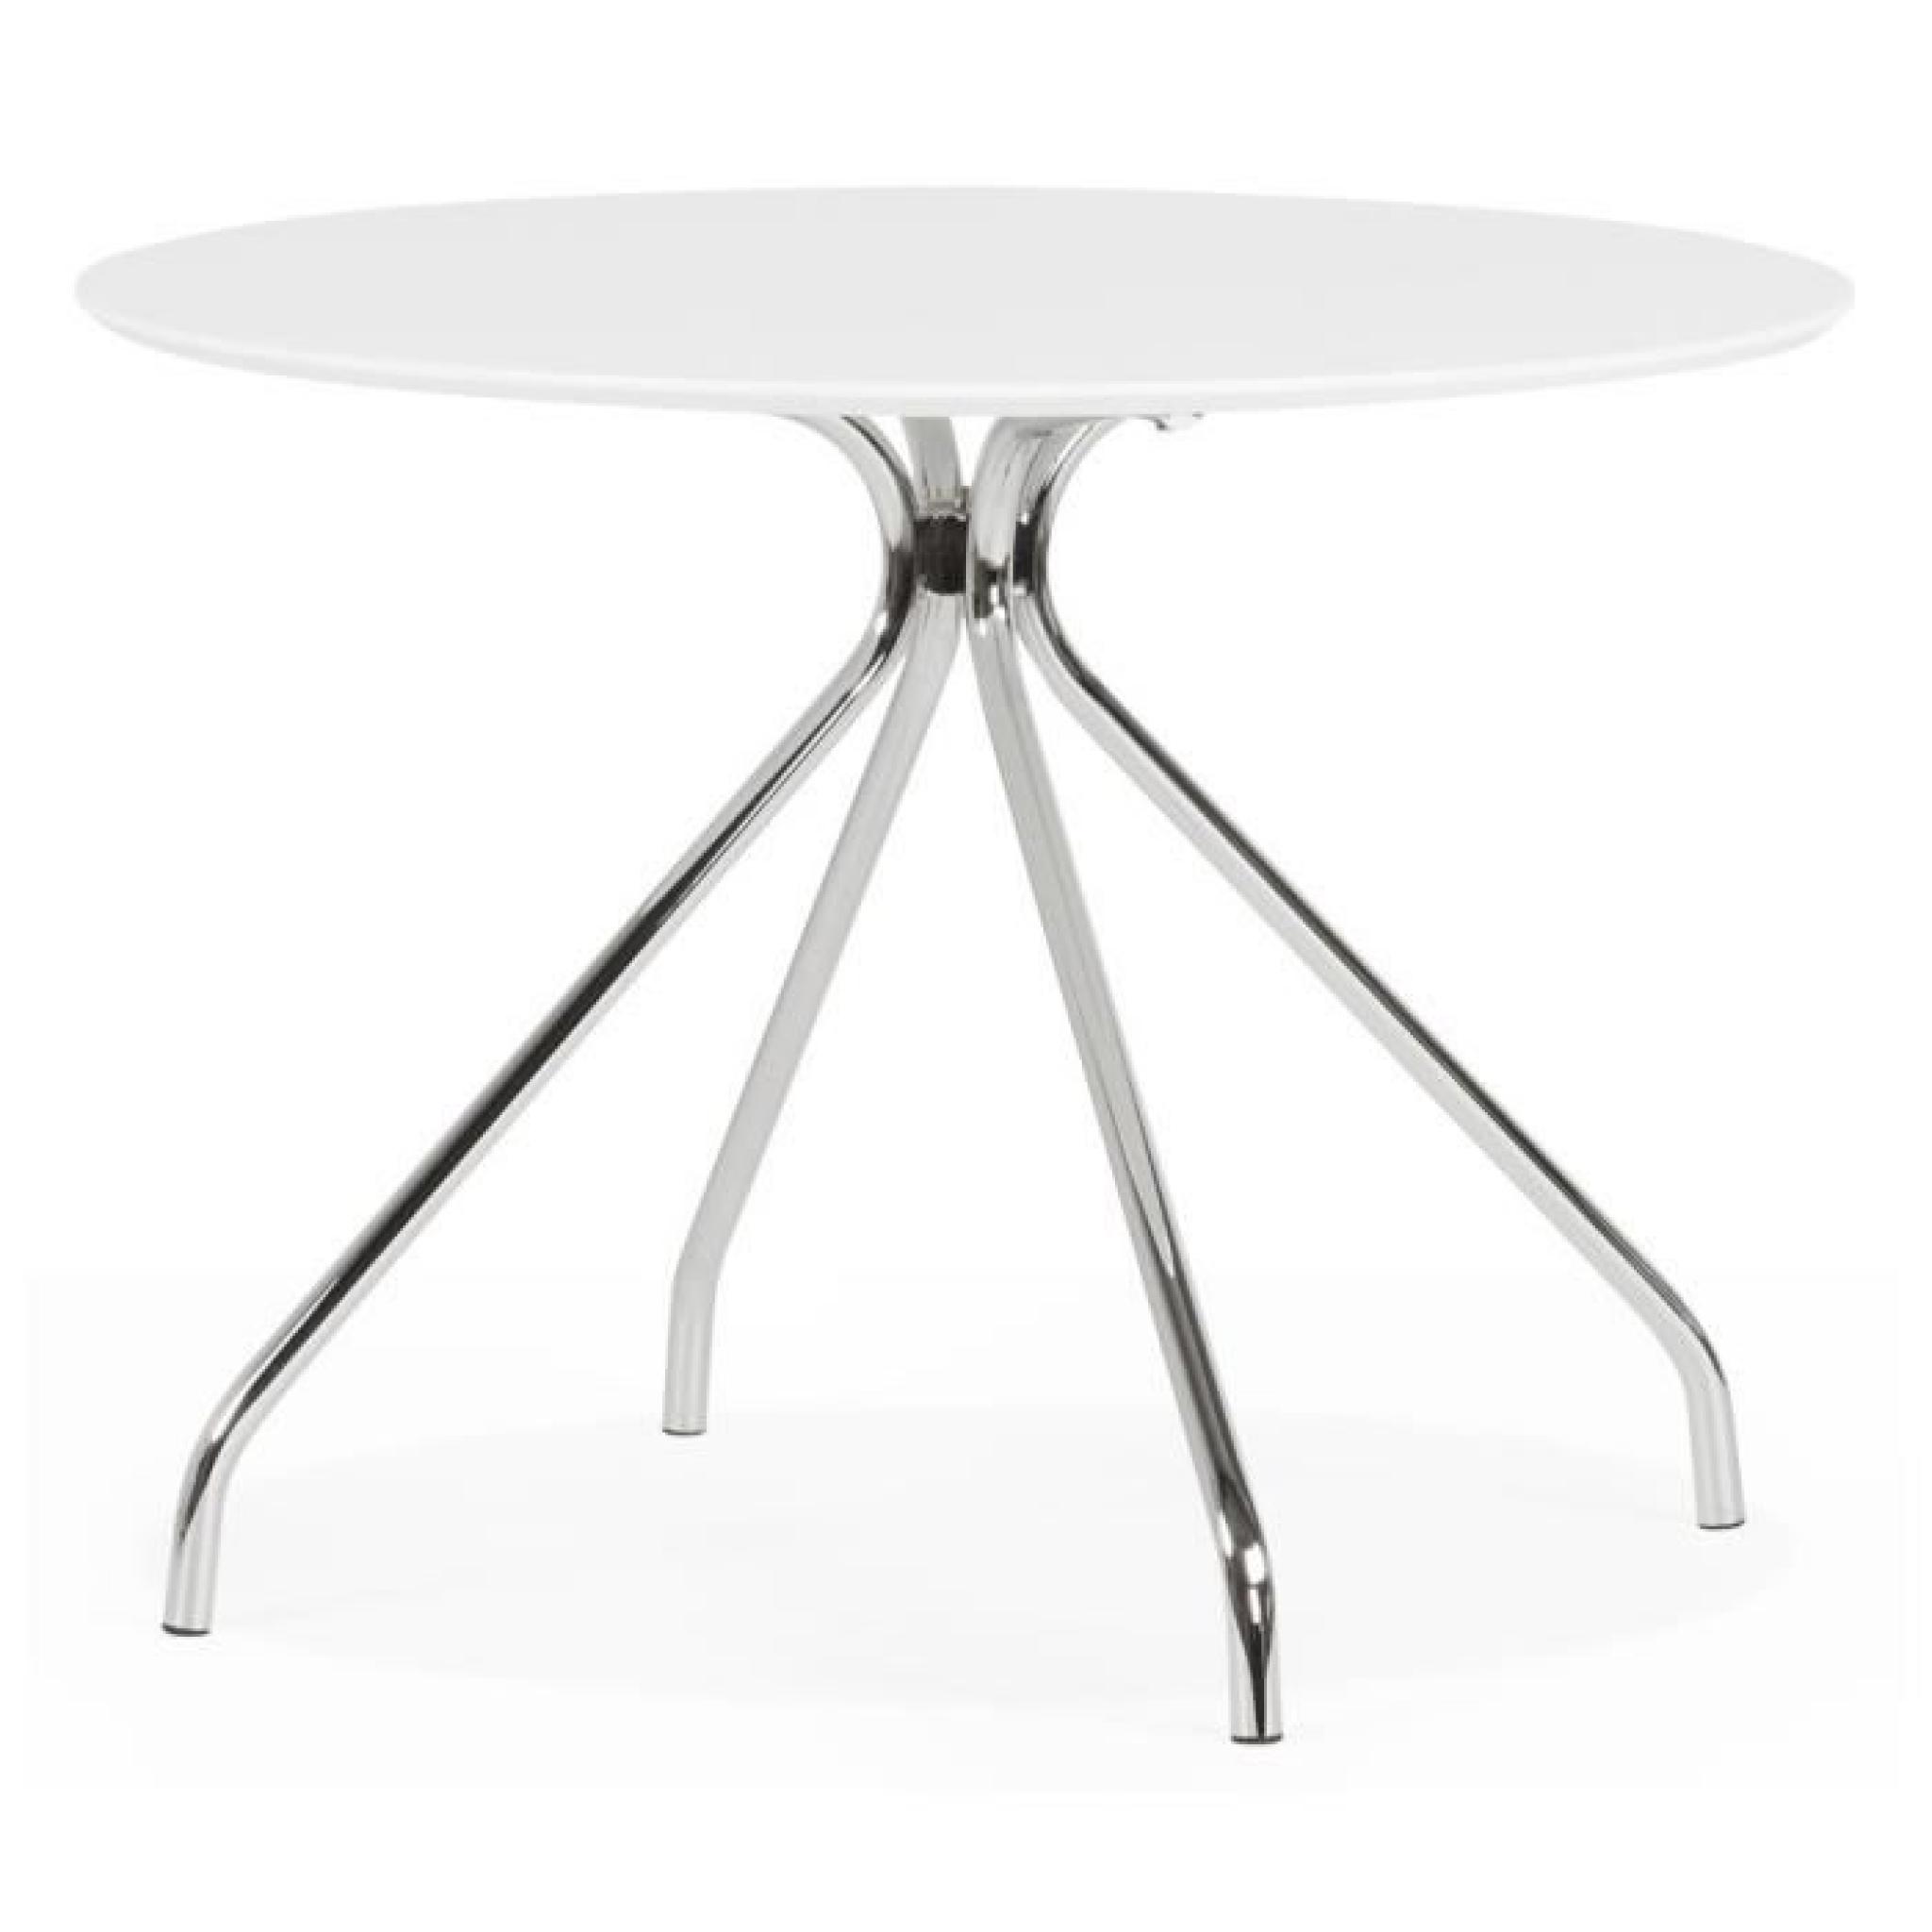 TABLE DE CUISINE 'GRIF WHITE' RONDE BLANCHE DESIGN